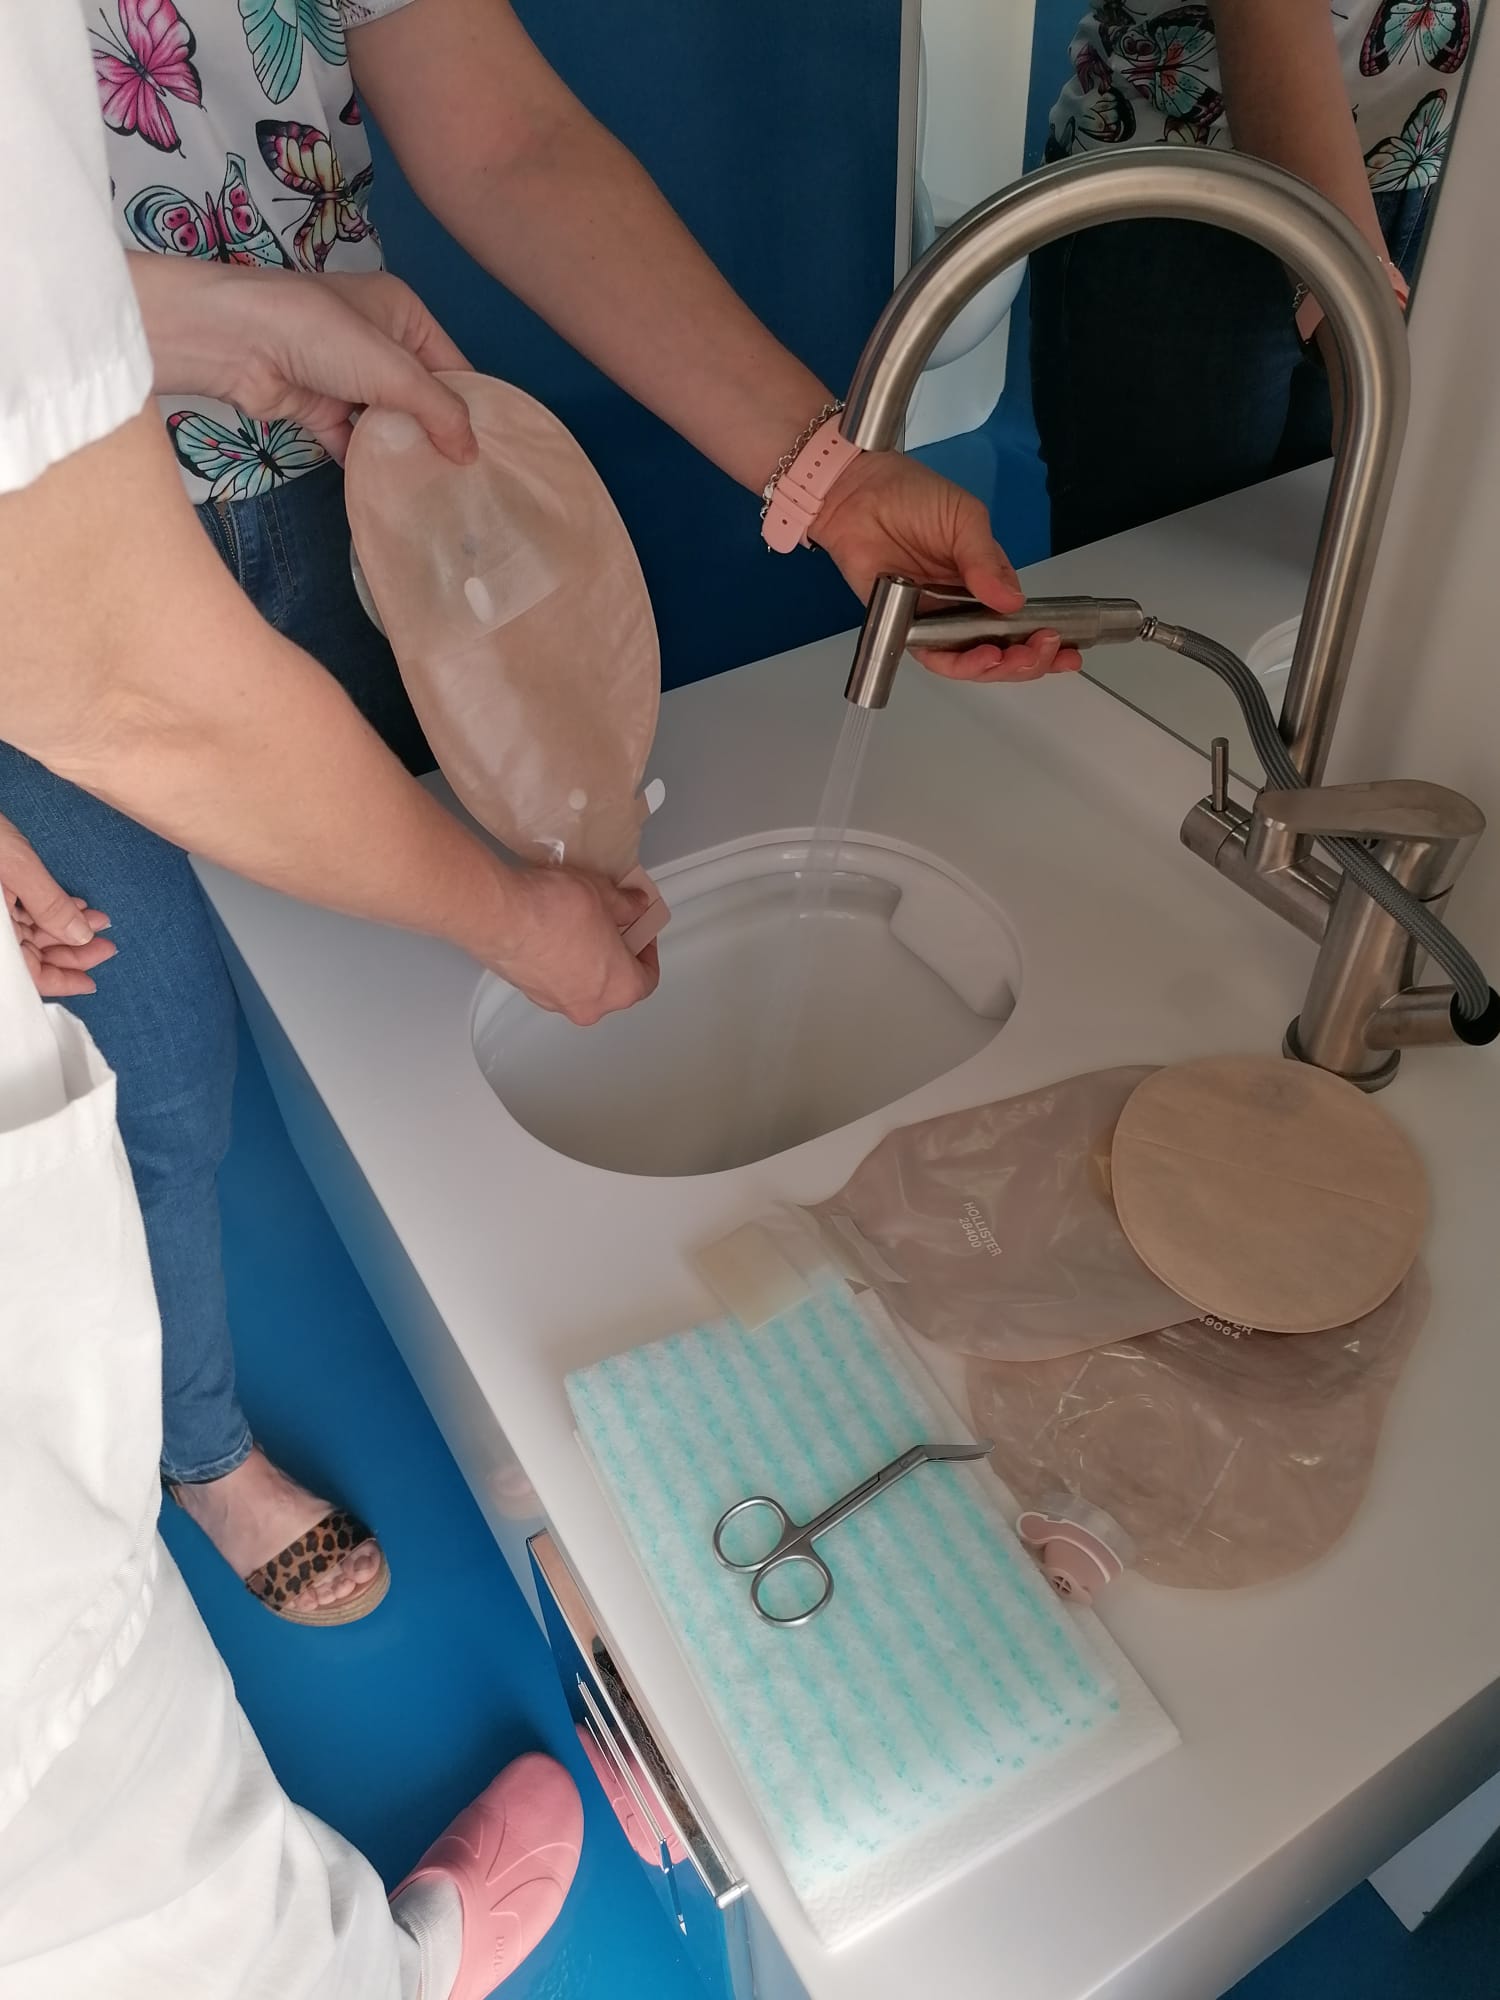 El Hospital General Universitario de Elche instaura un baño adaptado para personas ostomizadas